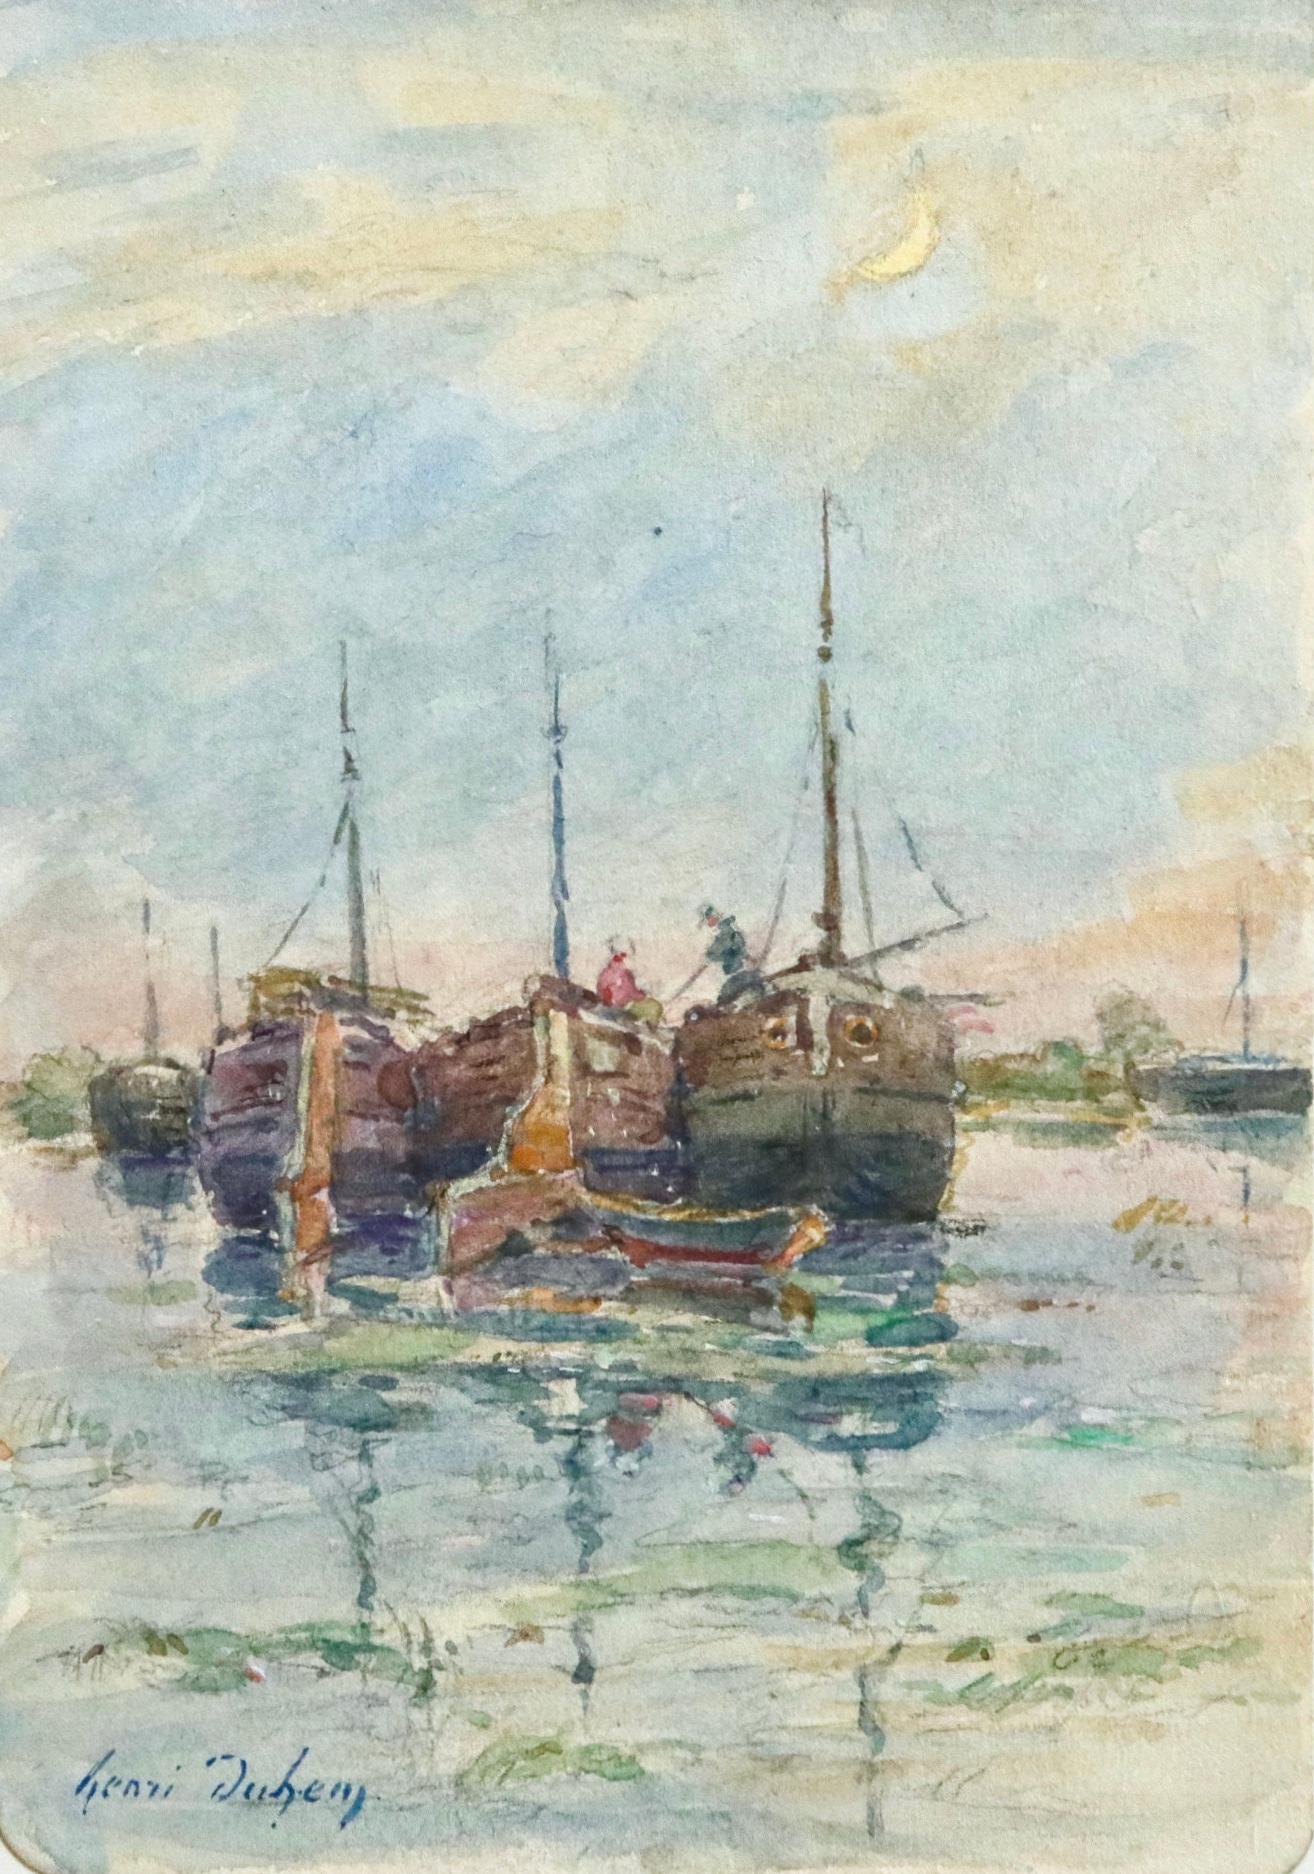 Henri Duhem Landscape Painting - Sur les Bateaux - 19th Century Watercolor, Boats on River Landscape by H Duhem